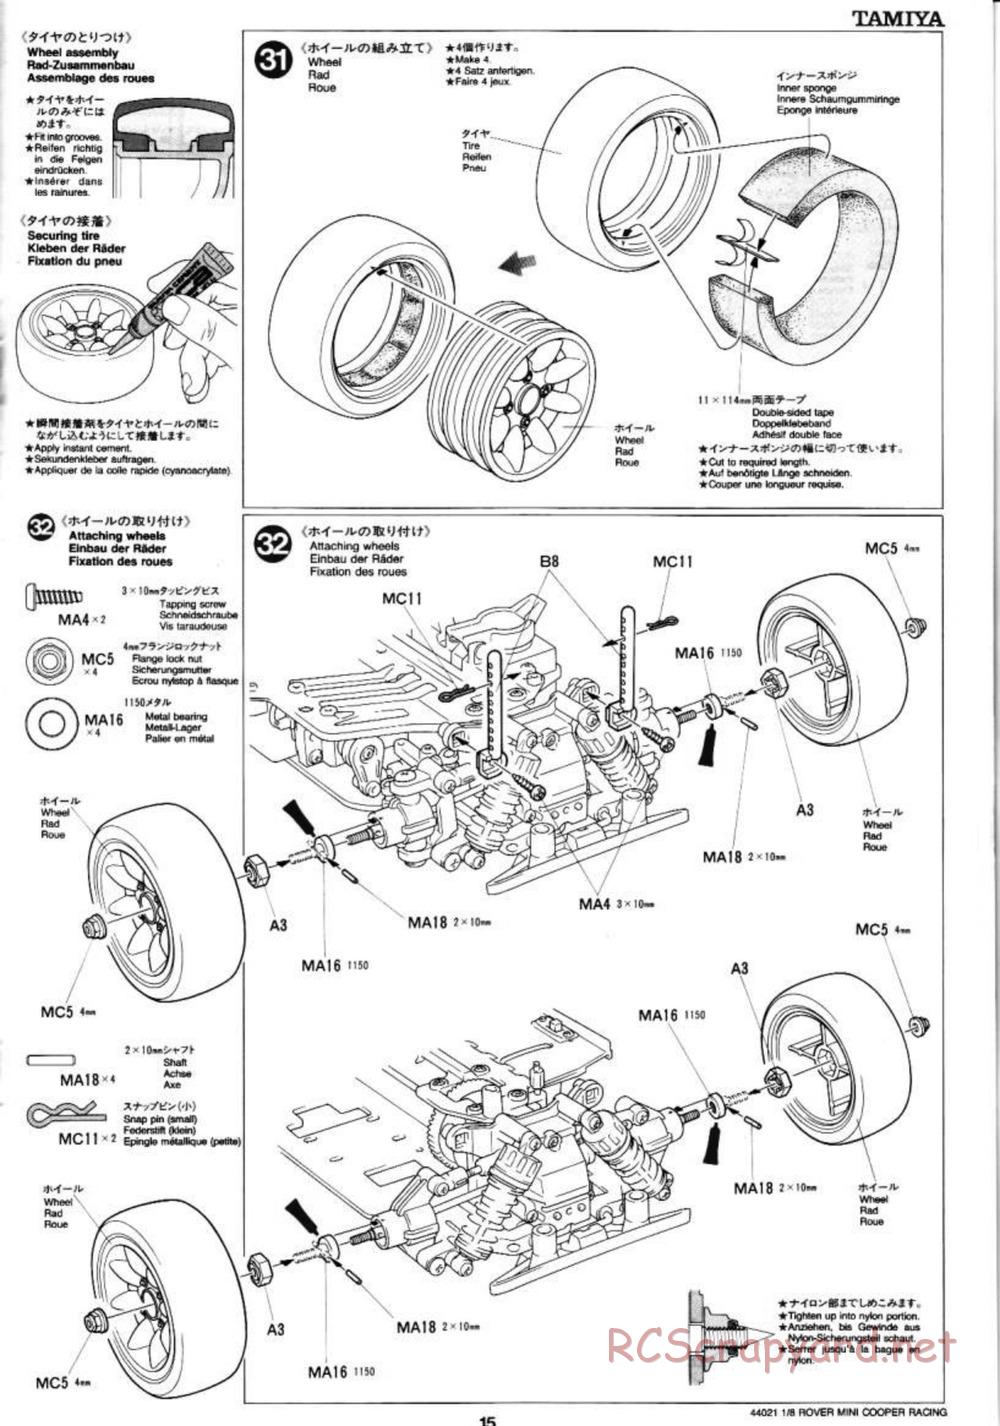 Tamiya - Rover Mini Cooper Racing - TG10 Mk.1 Chassis - Manual - Page 15